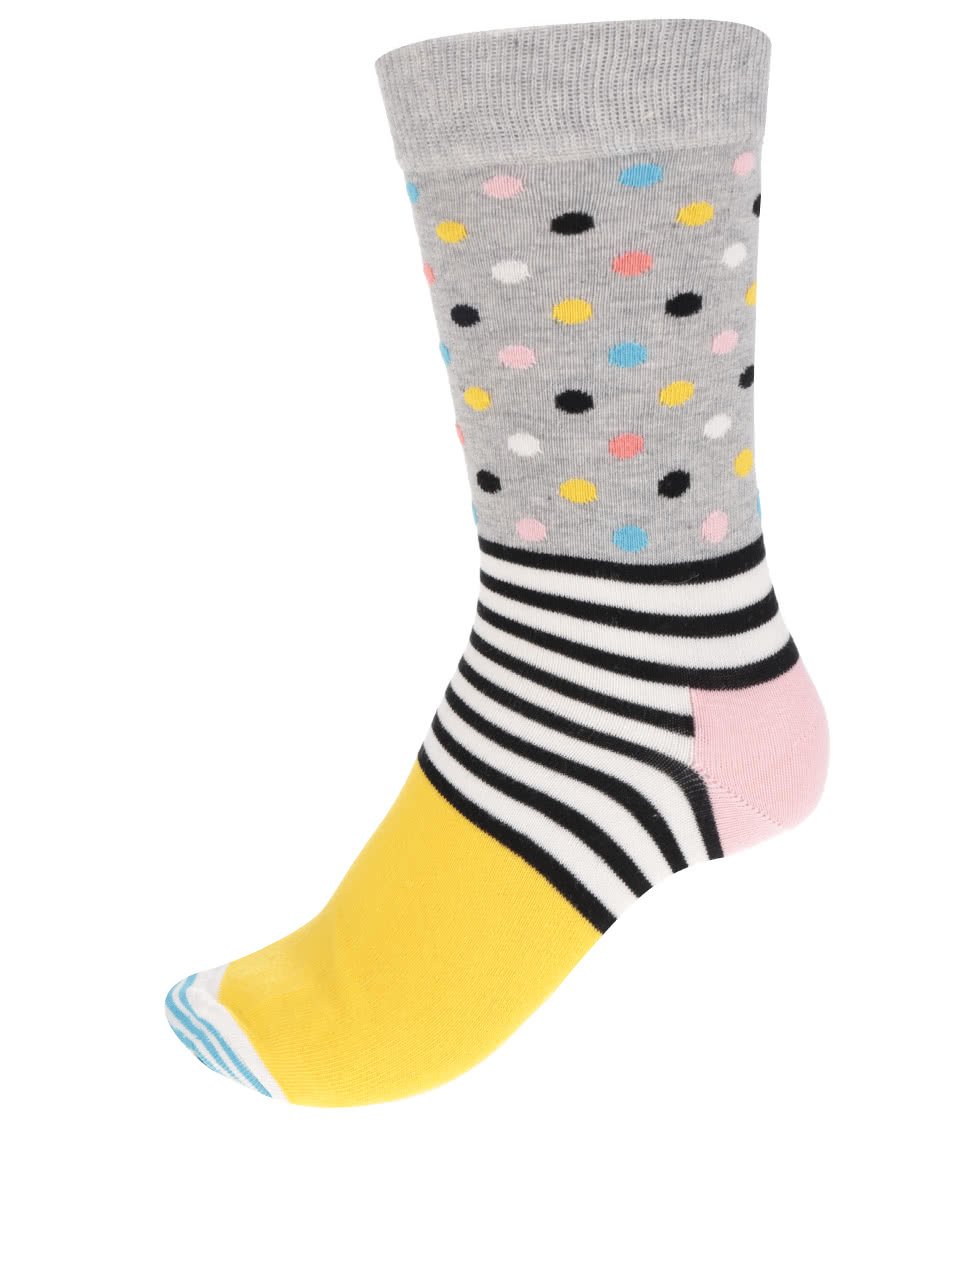 Žluto-šedé dámské ponožky s proužky a puntíky Stripes Dot Sock